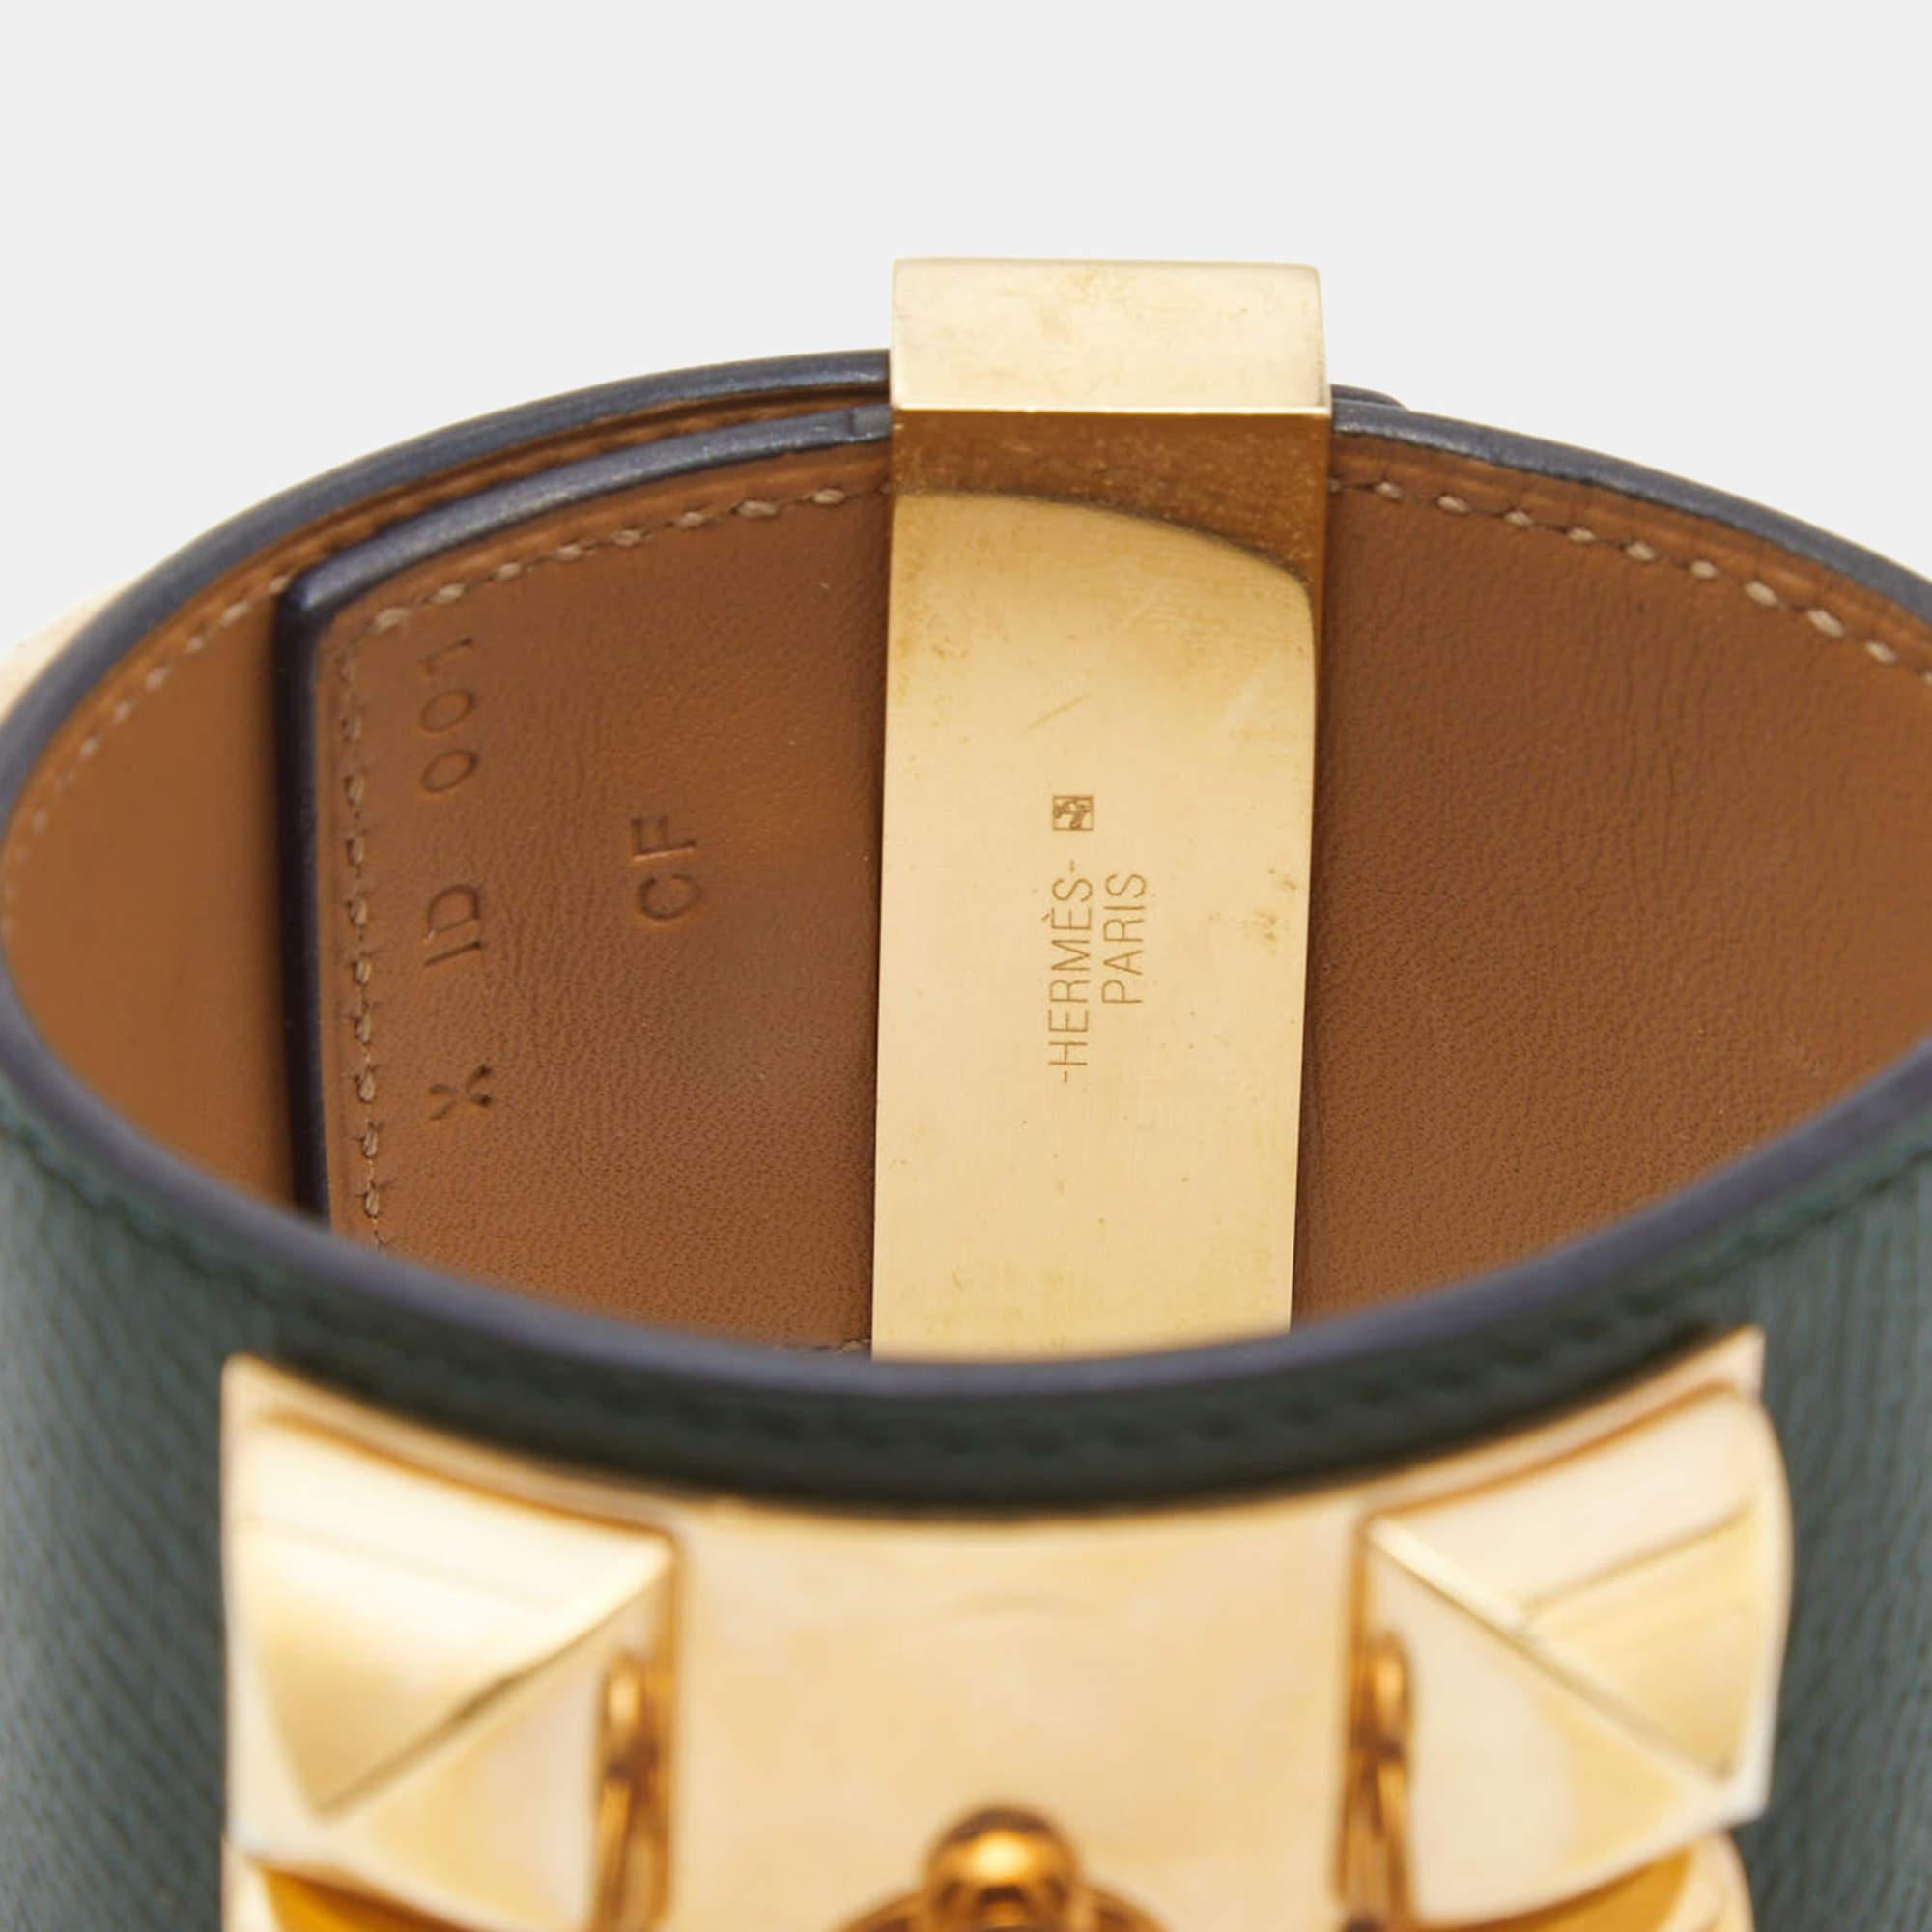 Le choix des meilleurs matériaux, associé à un savoir-faire artisanal, fait de ce bracelet Collier de Chien Hermes une création digne d'être chérie. Il se porte gracieusement sur n'importe quel poignet.

